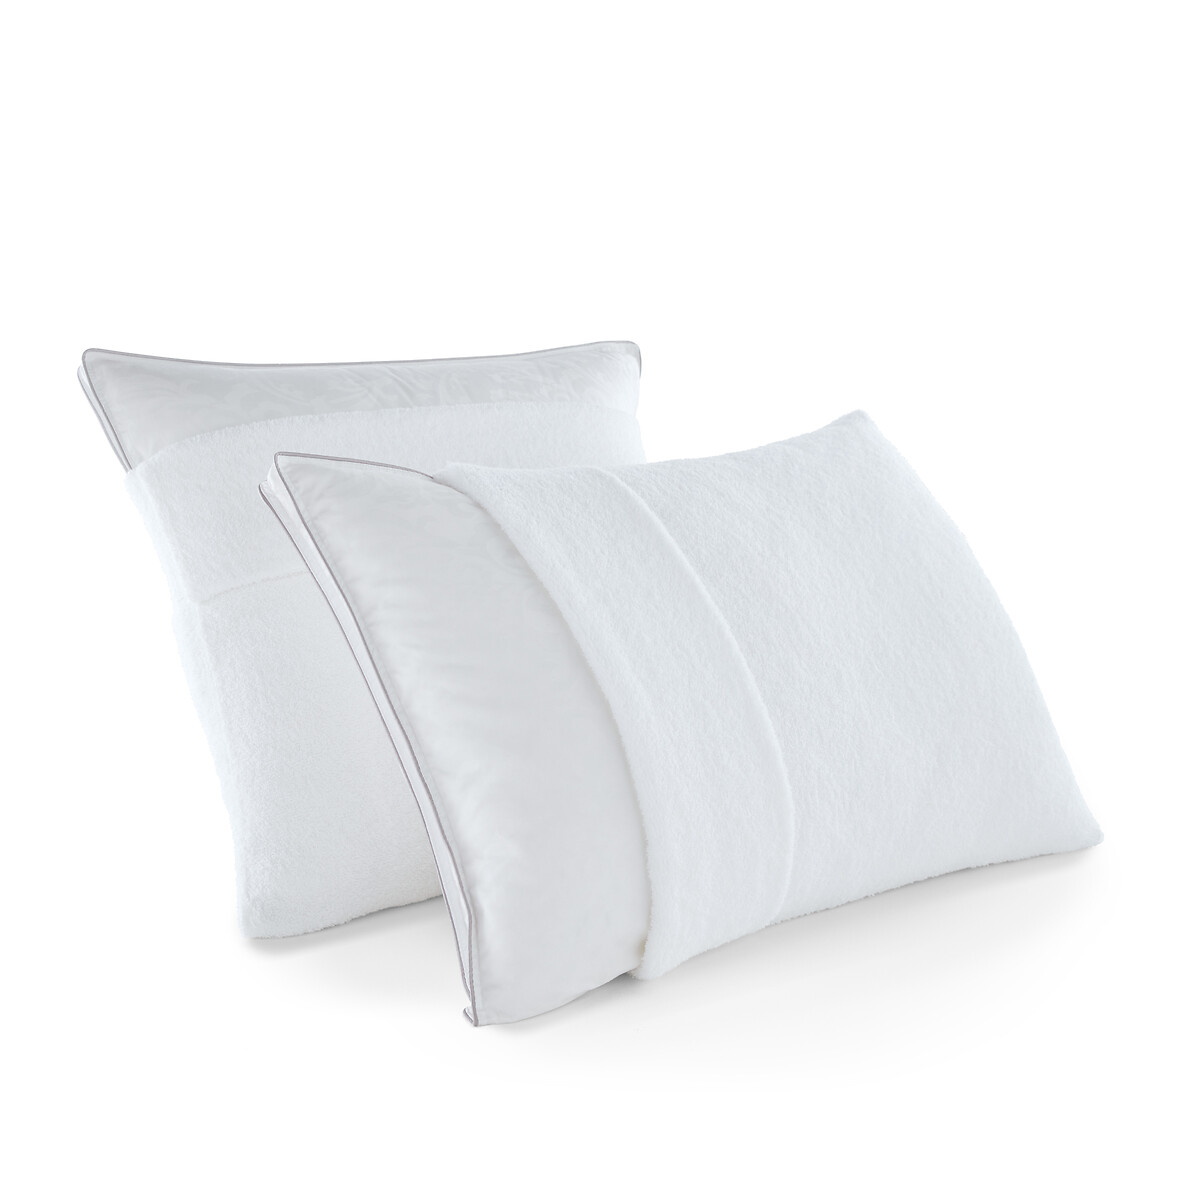 Чехол Защитный на подушку из махровой ткани 100 хлопок 50 x 70 см белый